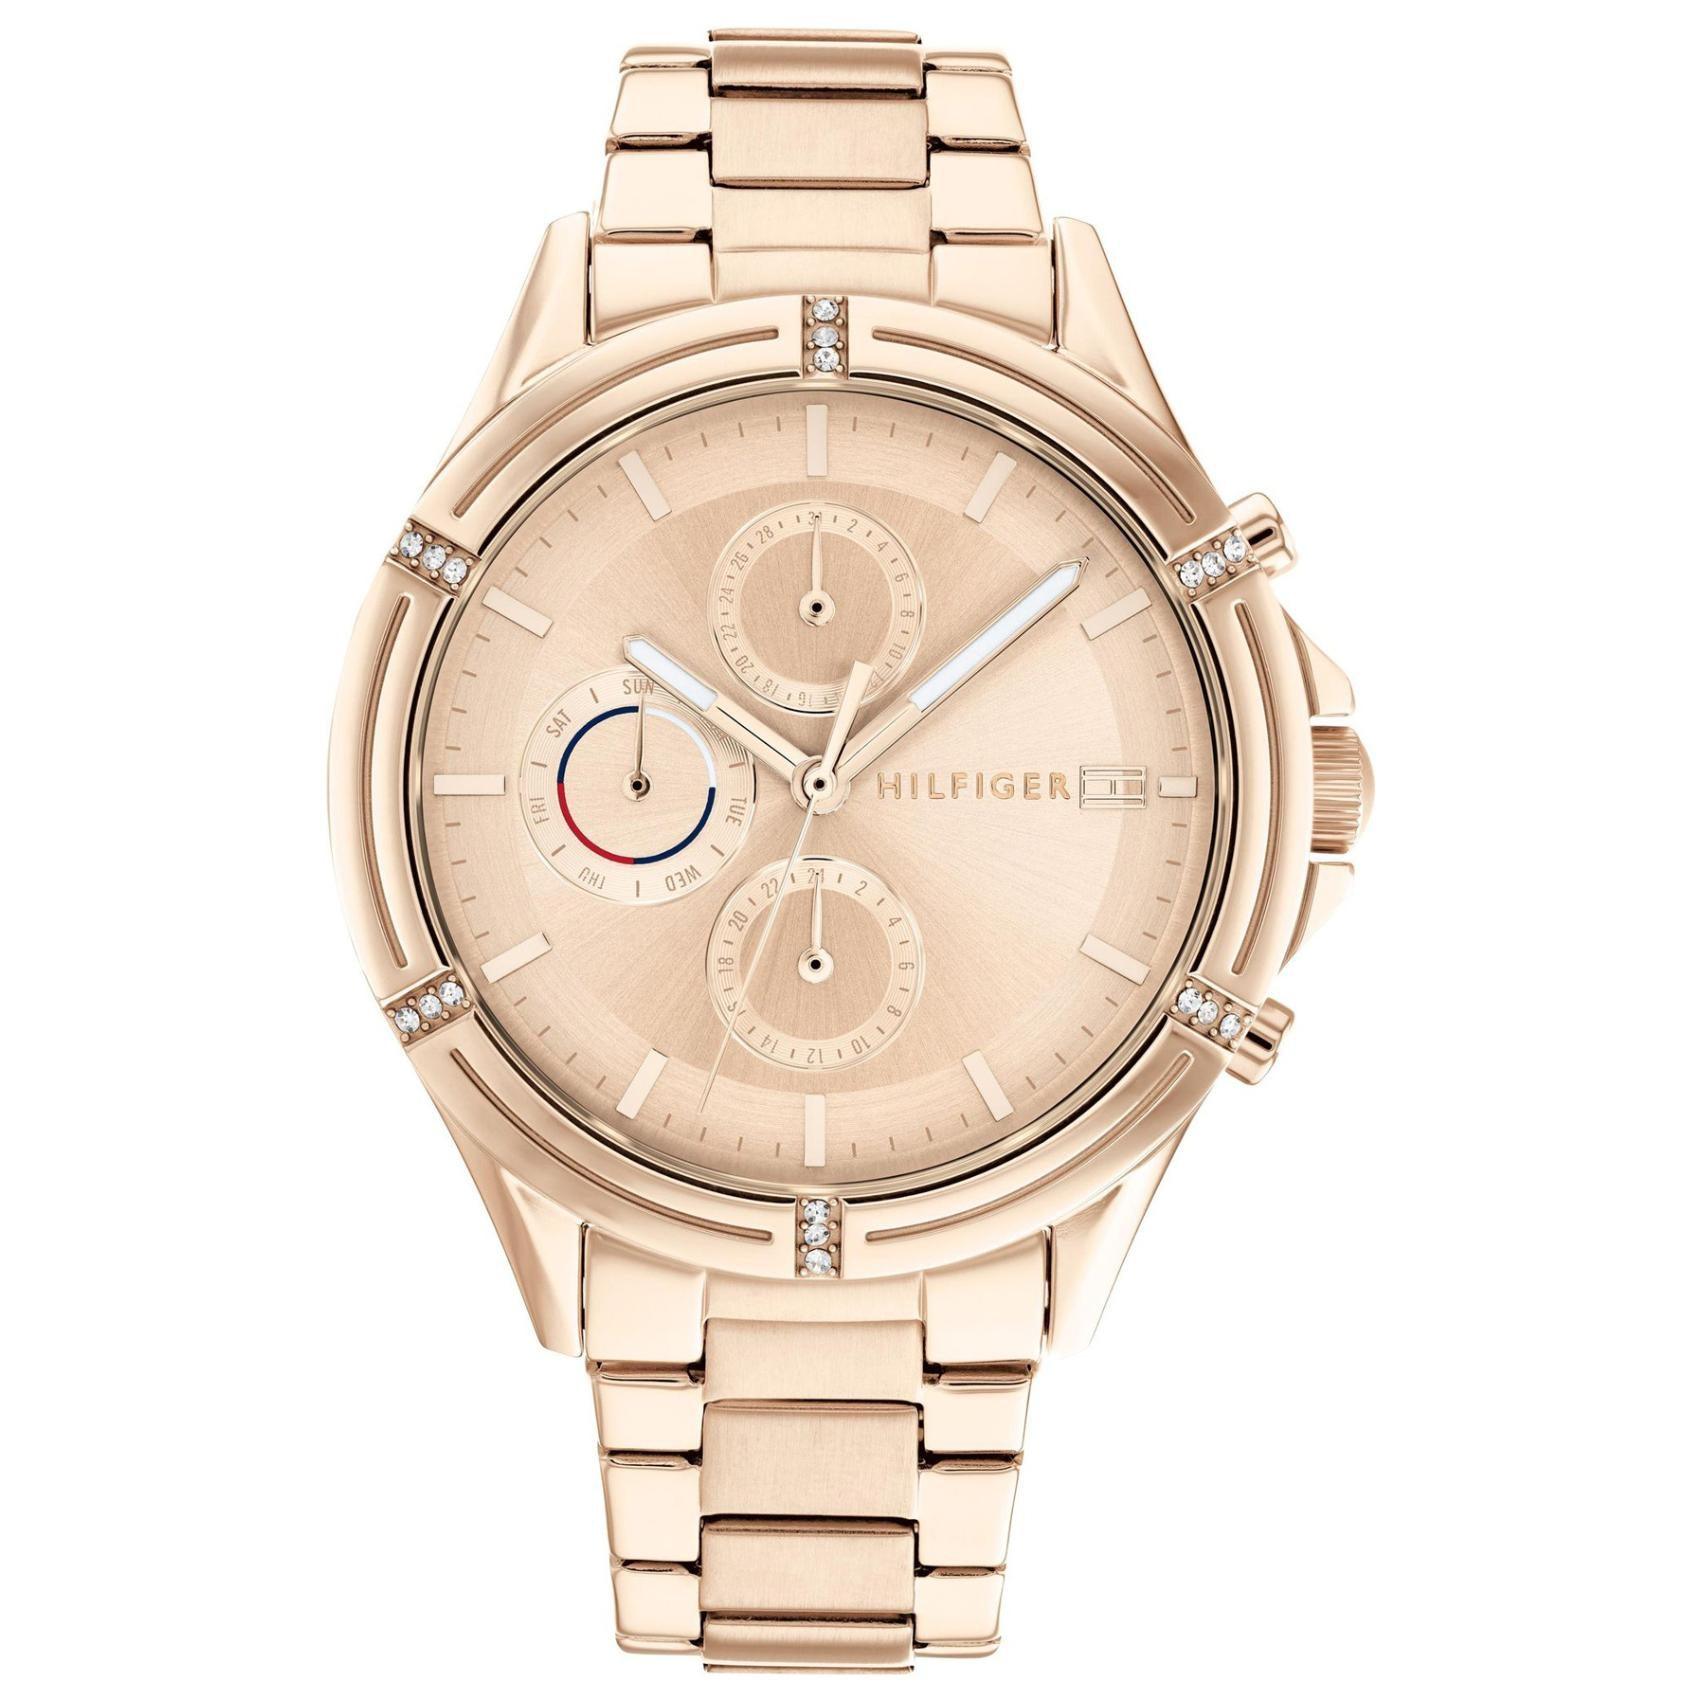 Γυναικείο ρολόι Tommy Hilfiger Ariana 1782505 με ροζ χρυσό ατσάλινο μπρασελέ και ροζ χρυσό καντράν διαμέτρου 38mm με ημέρα και ημερομηνία.